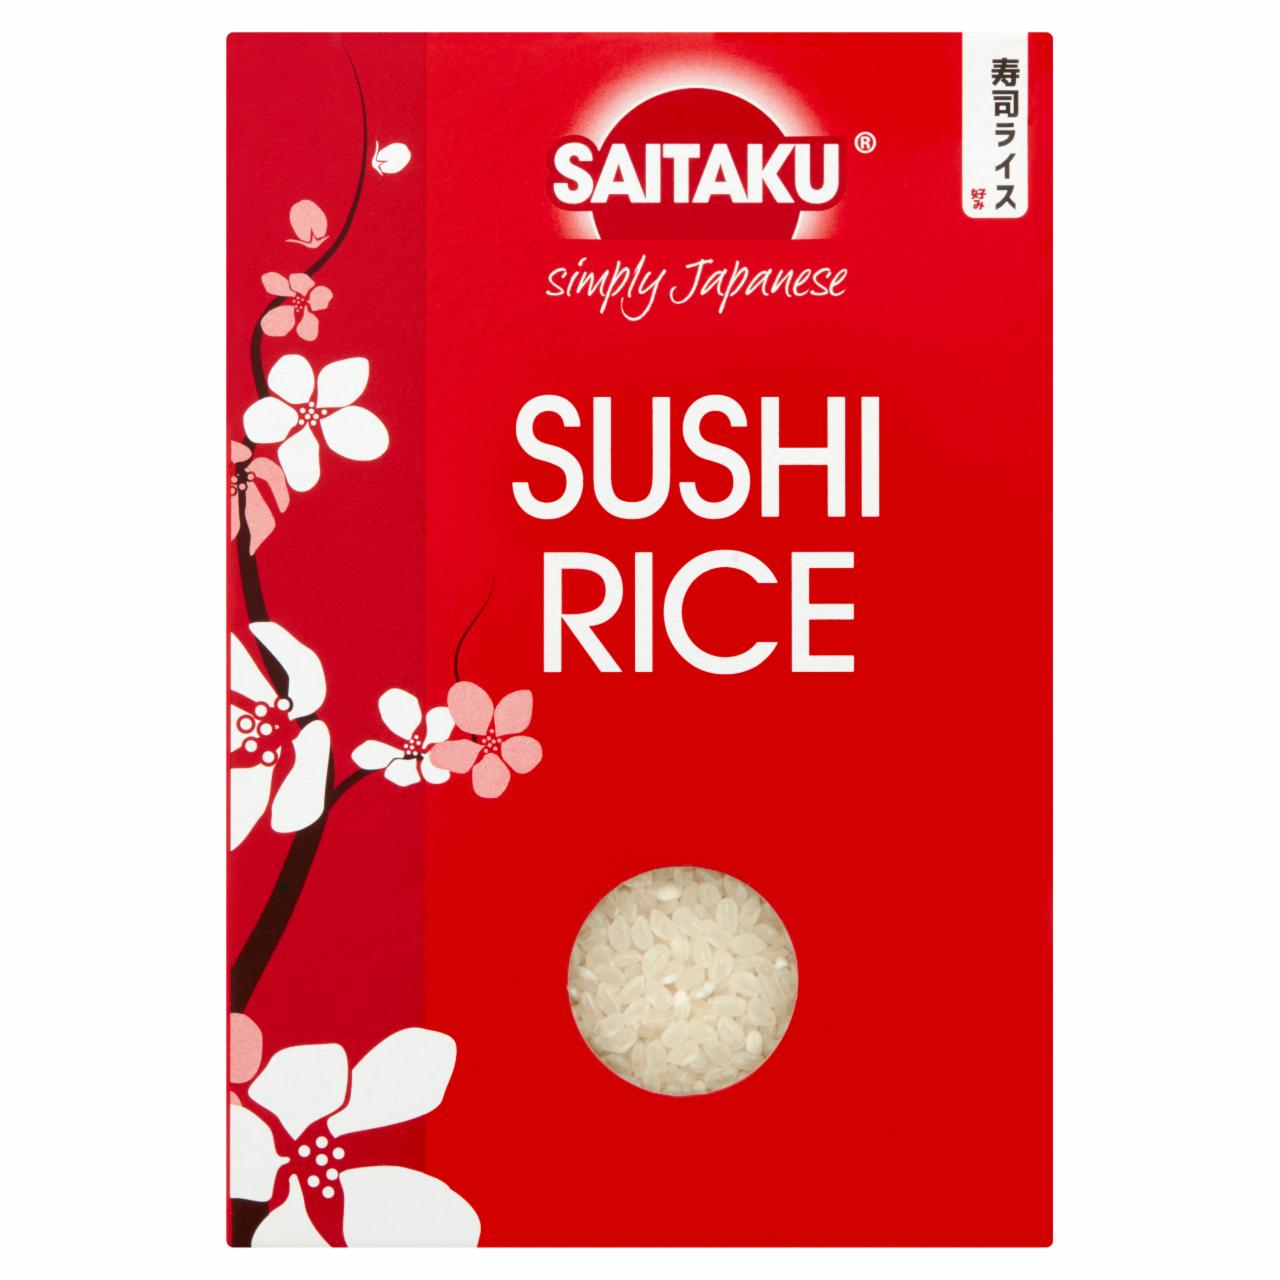 Képek - Saitaku rövid szemű rizs sushi készítéséhez 500 g